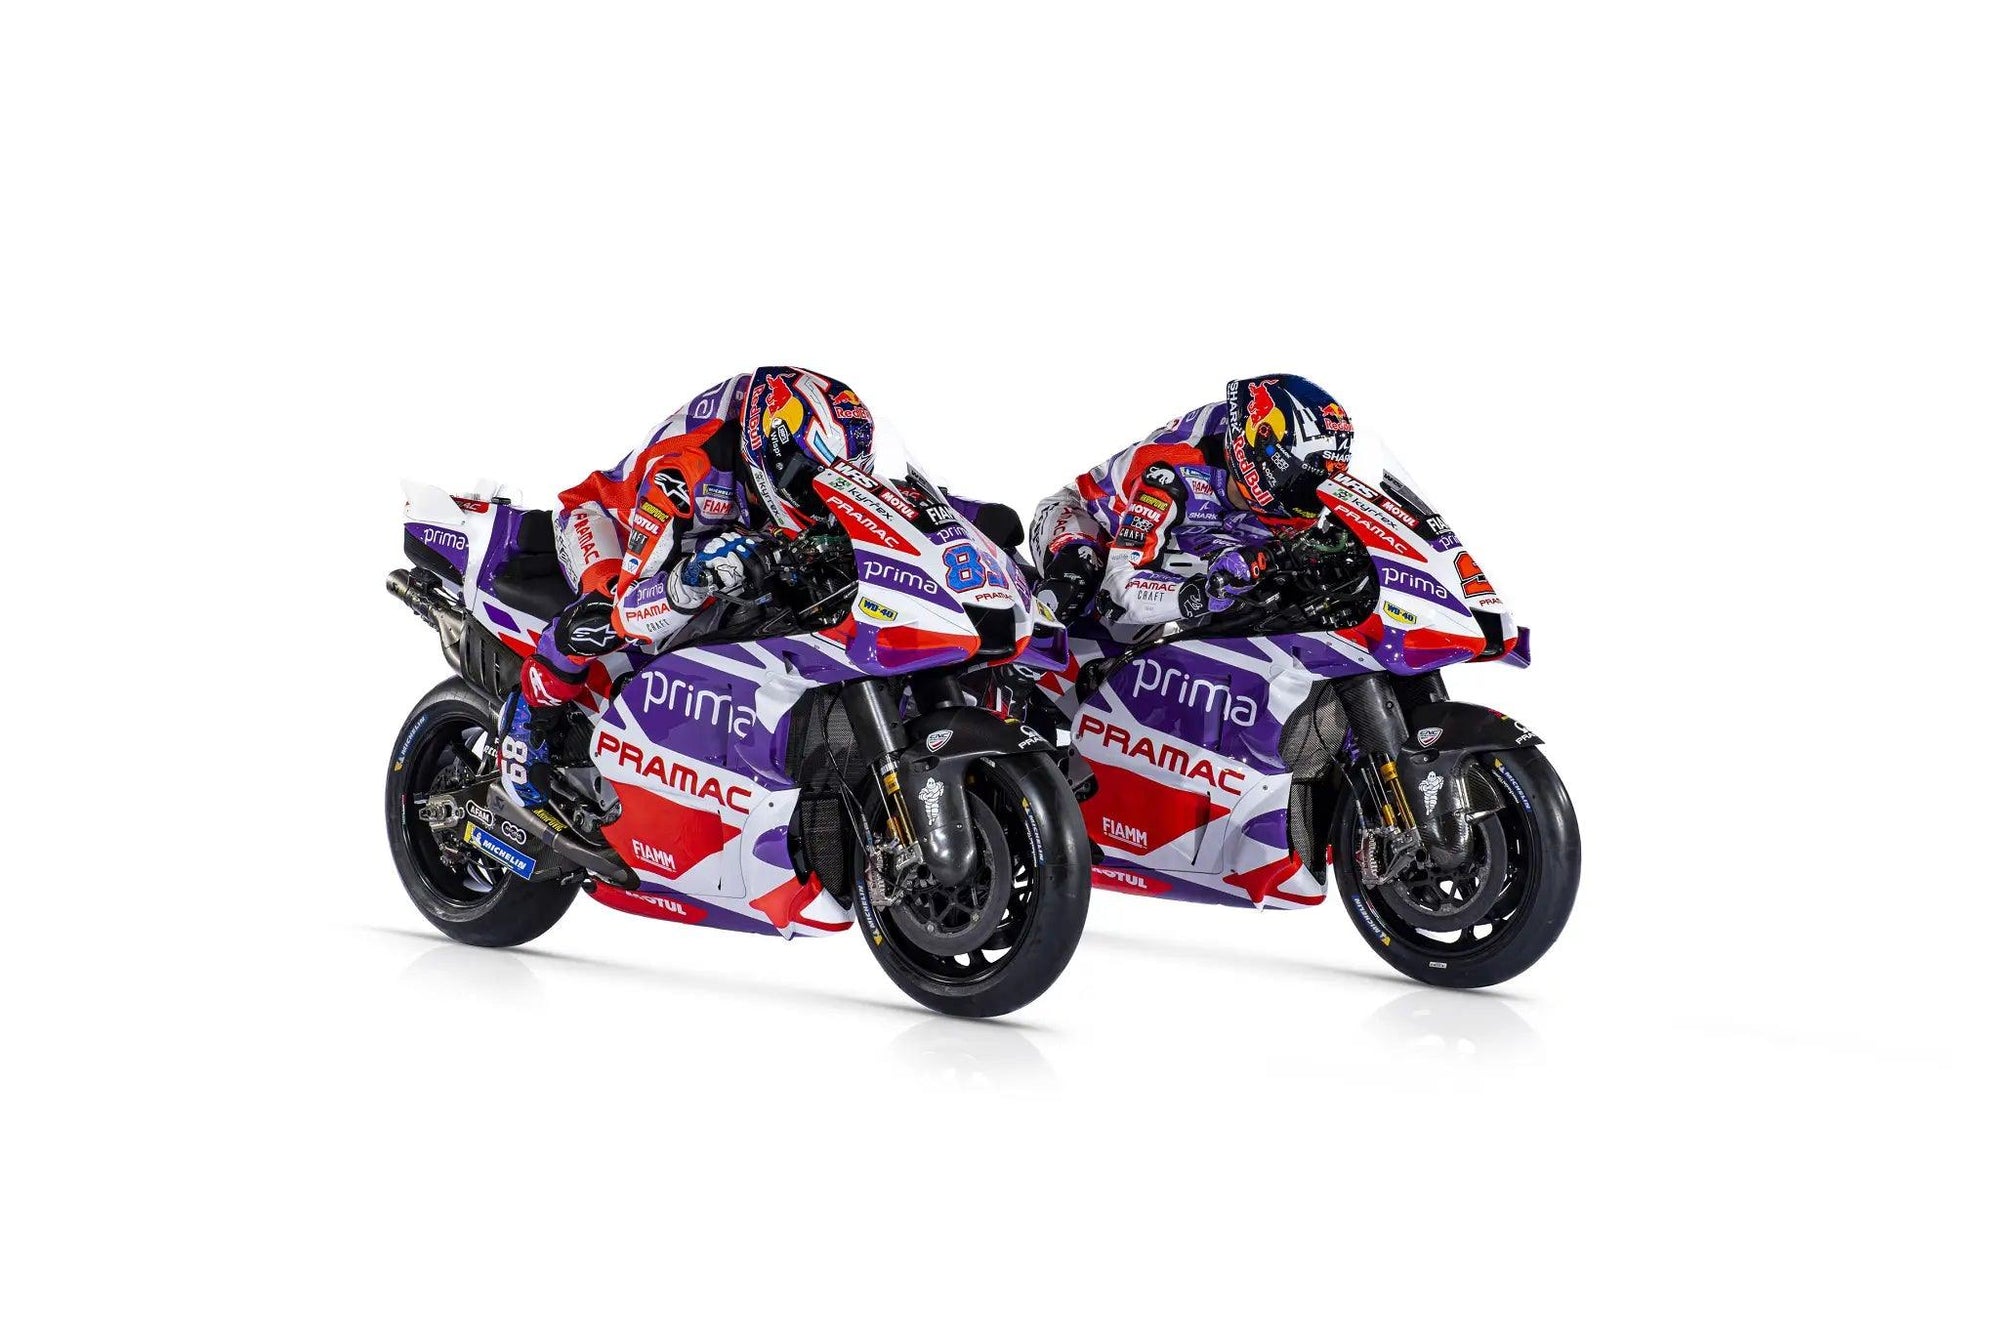 Pramac Racing MotoGP new colors for 2023 season!